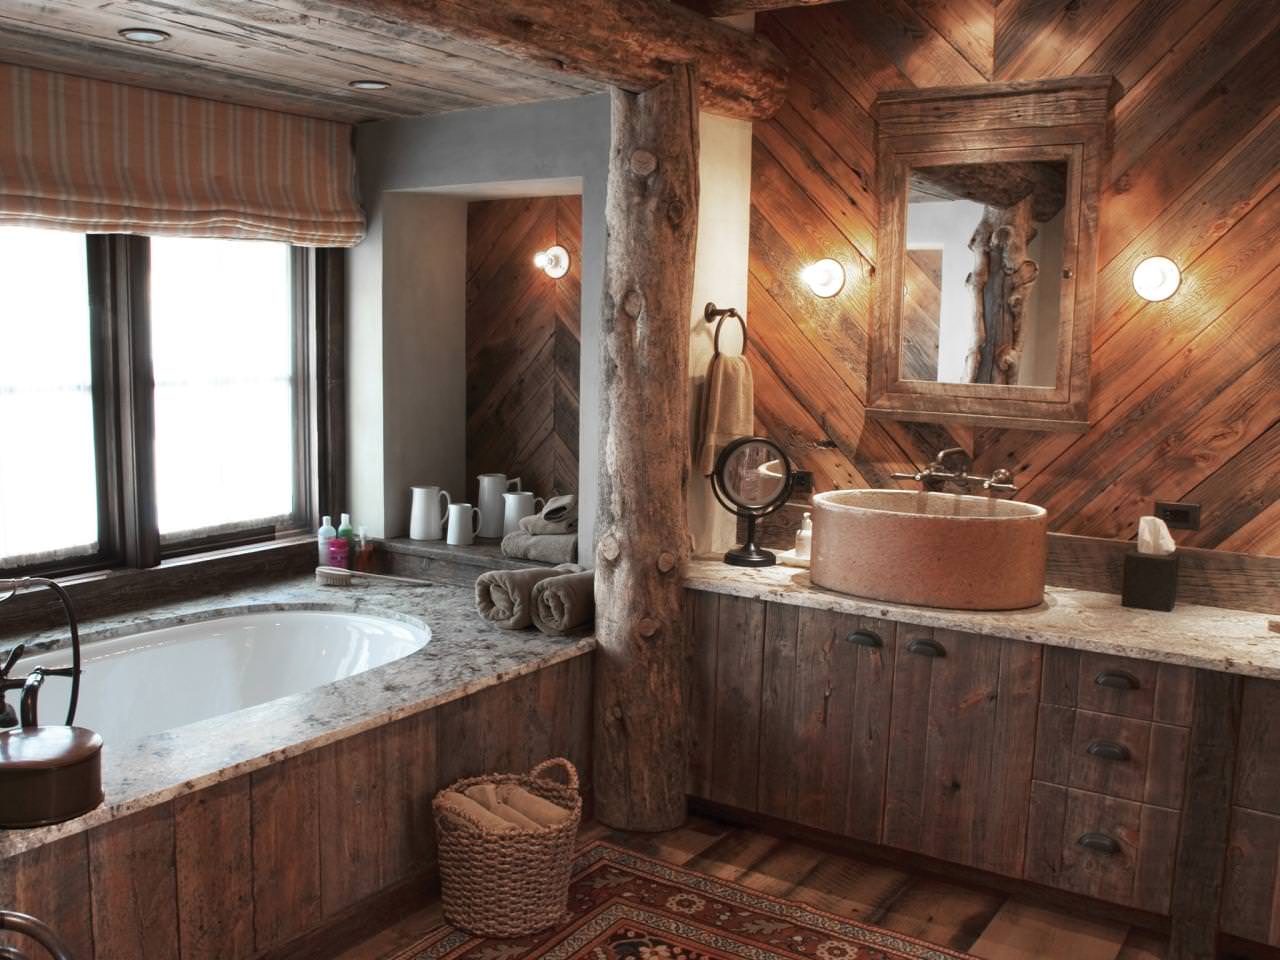 Banheiro em uma casa de madeira: foto do interior de um belo acabamento em uma casa de um bar